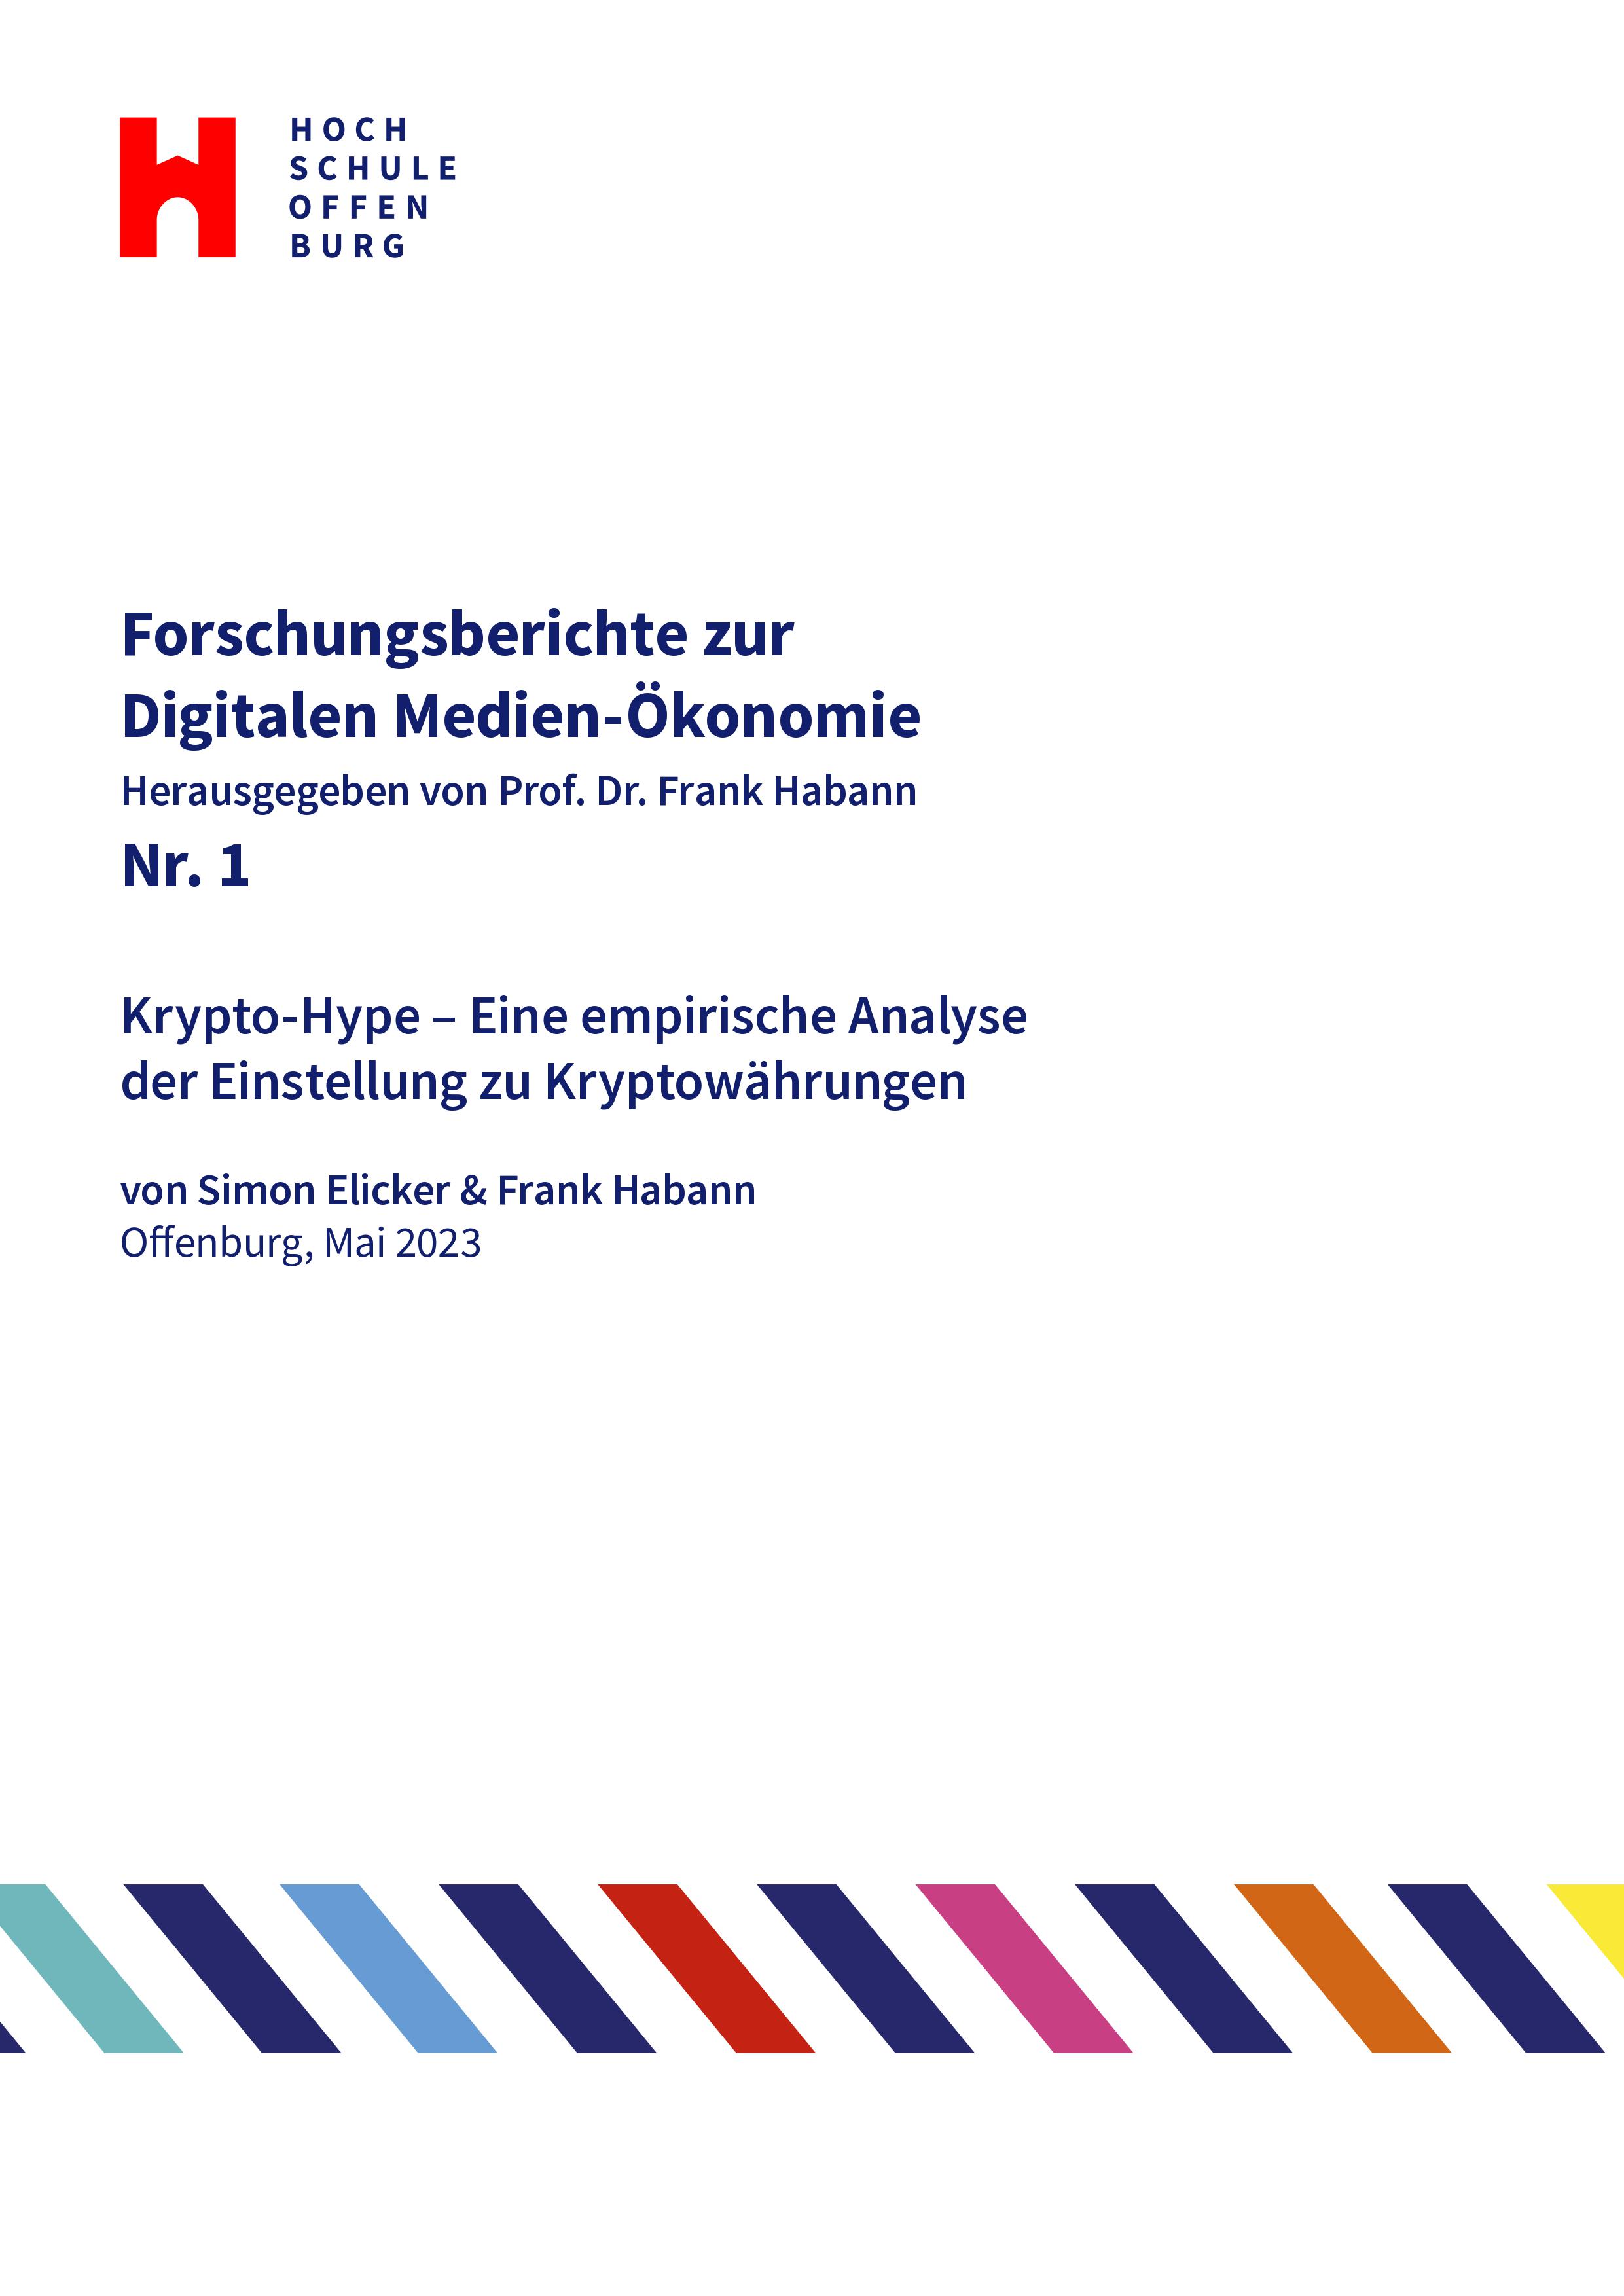 					View No. 1 (2023): Krypto-Hype – Eine empirische Analyse der Einstellung zu Kryptowährungen (Simon Elicker, Frank Habann)
				